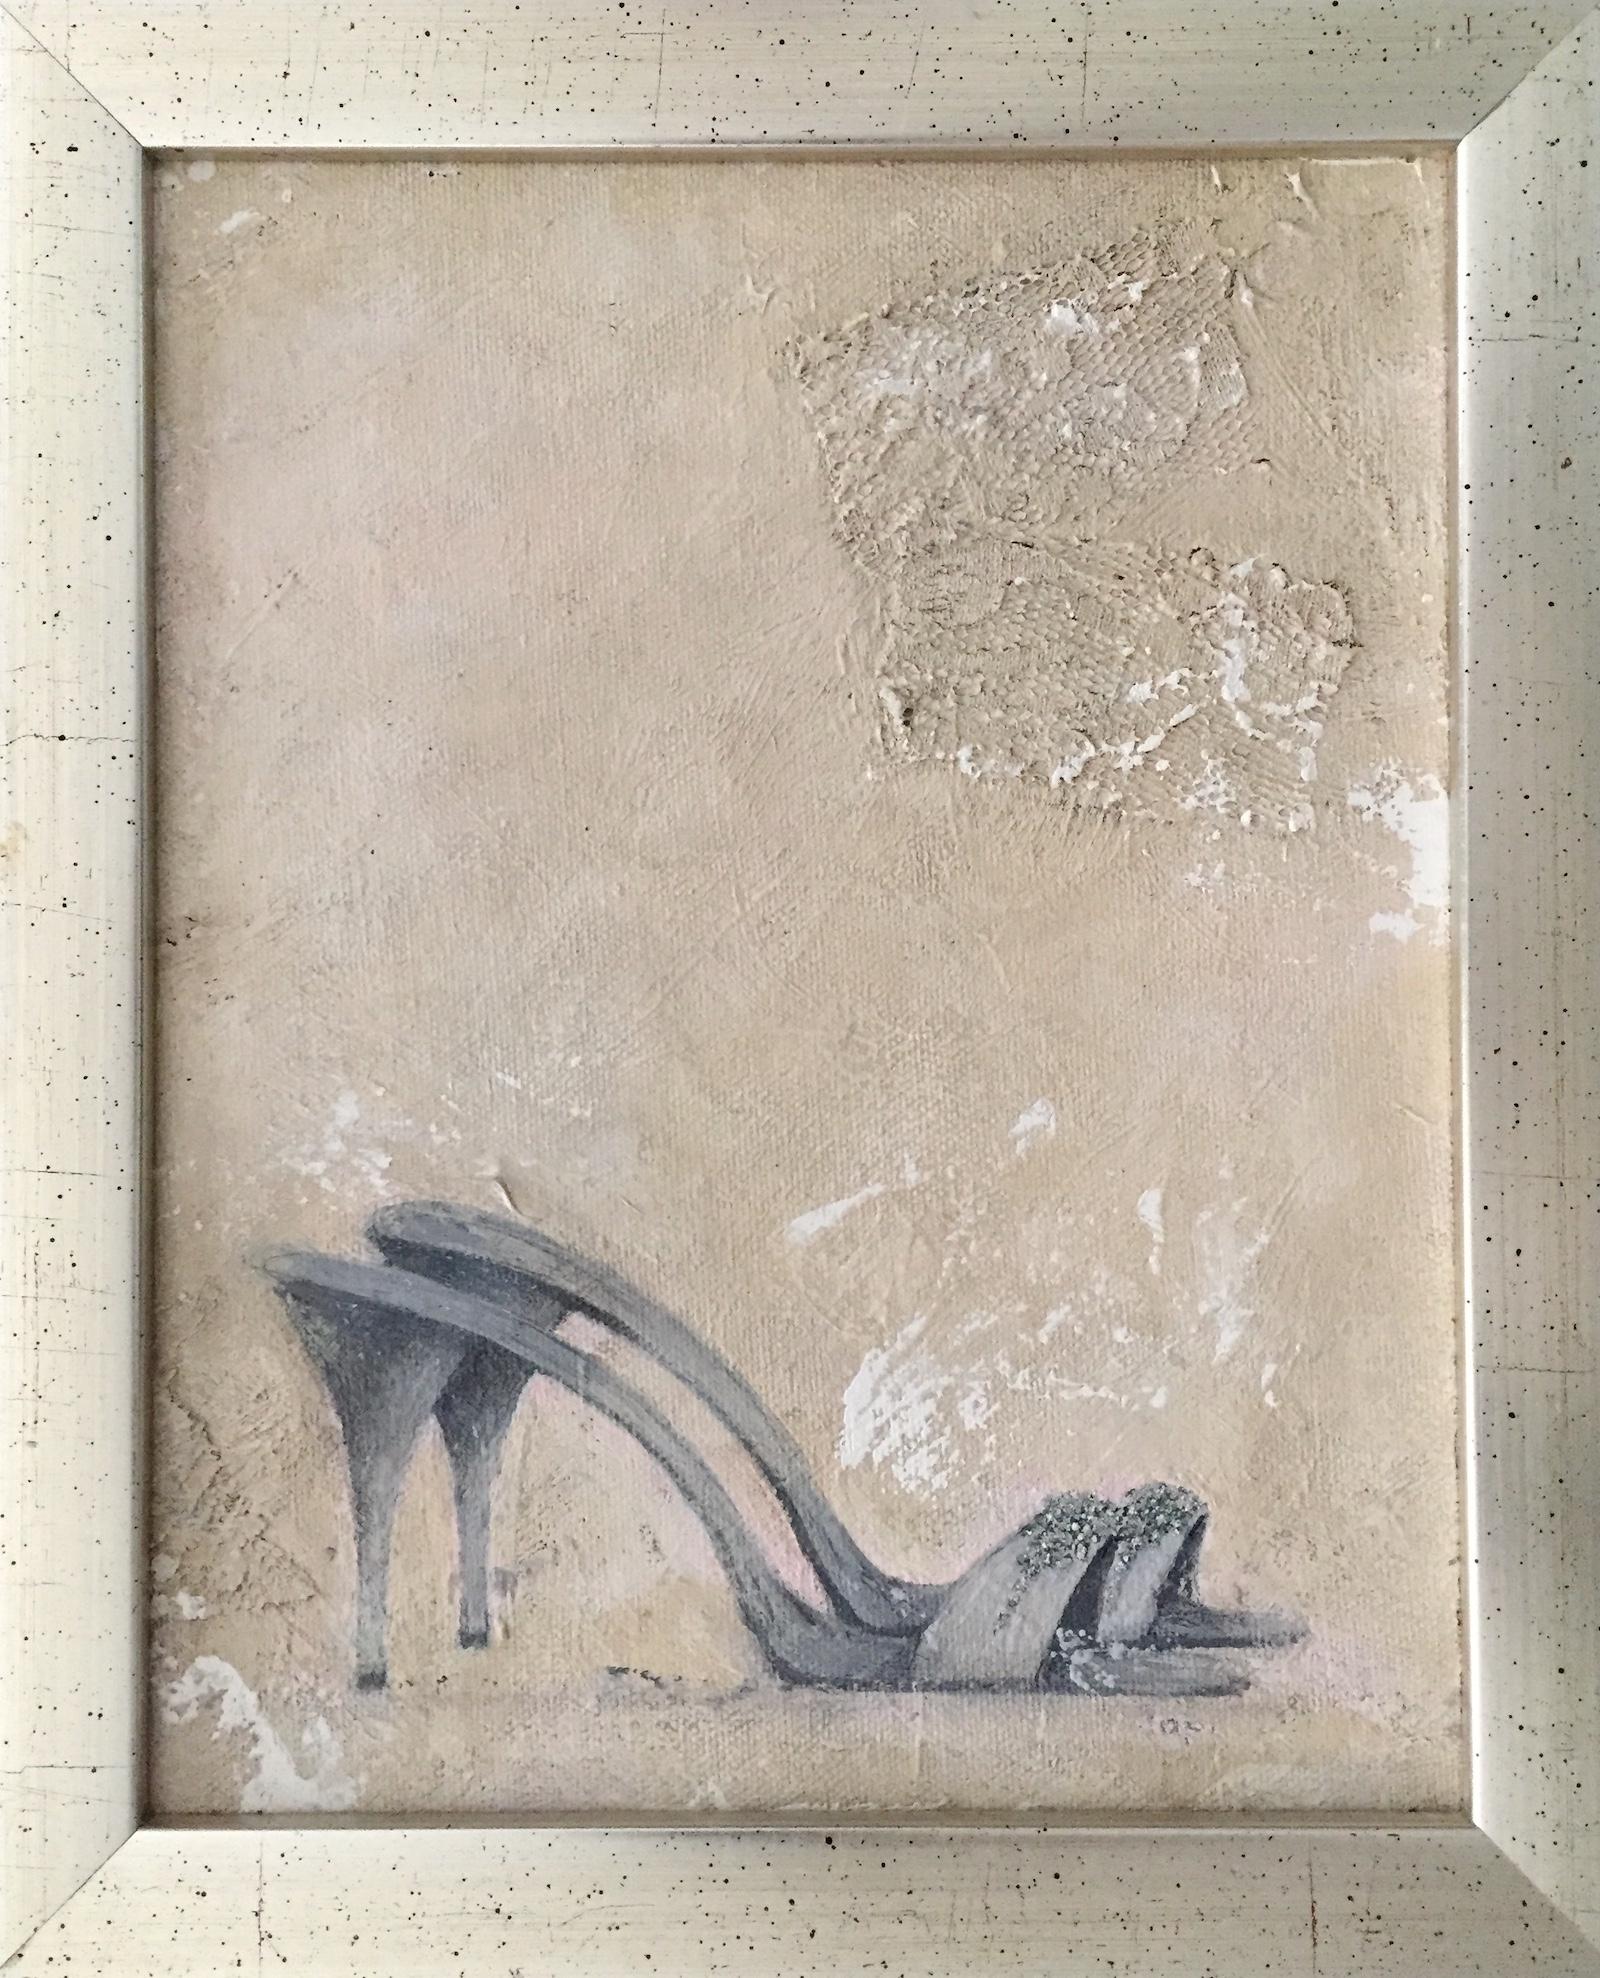  Abend Schuhe (11.4"" x 9,4" - gerahmtes Gemälde, Grau, Neutral)